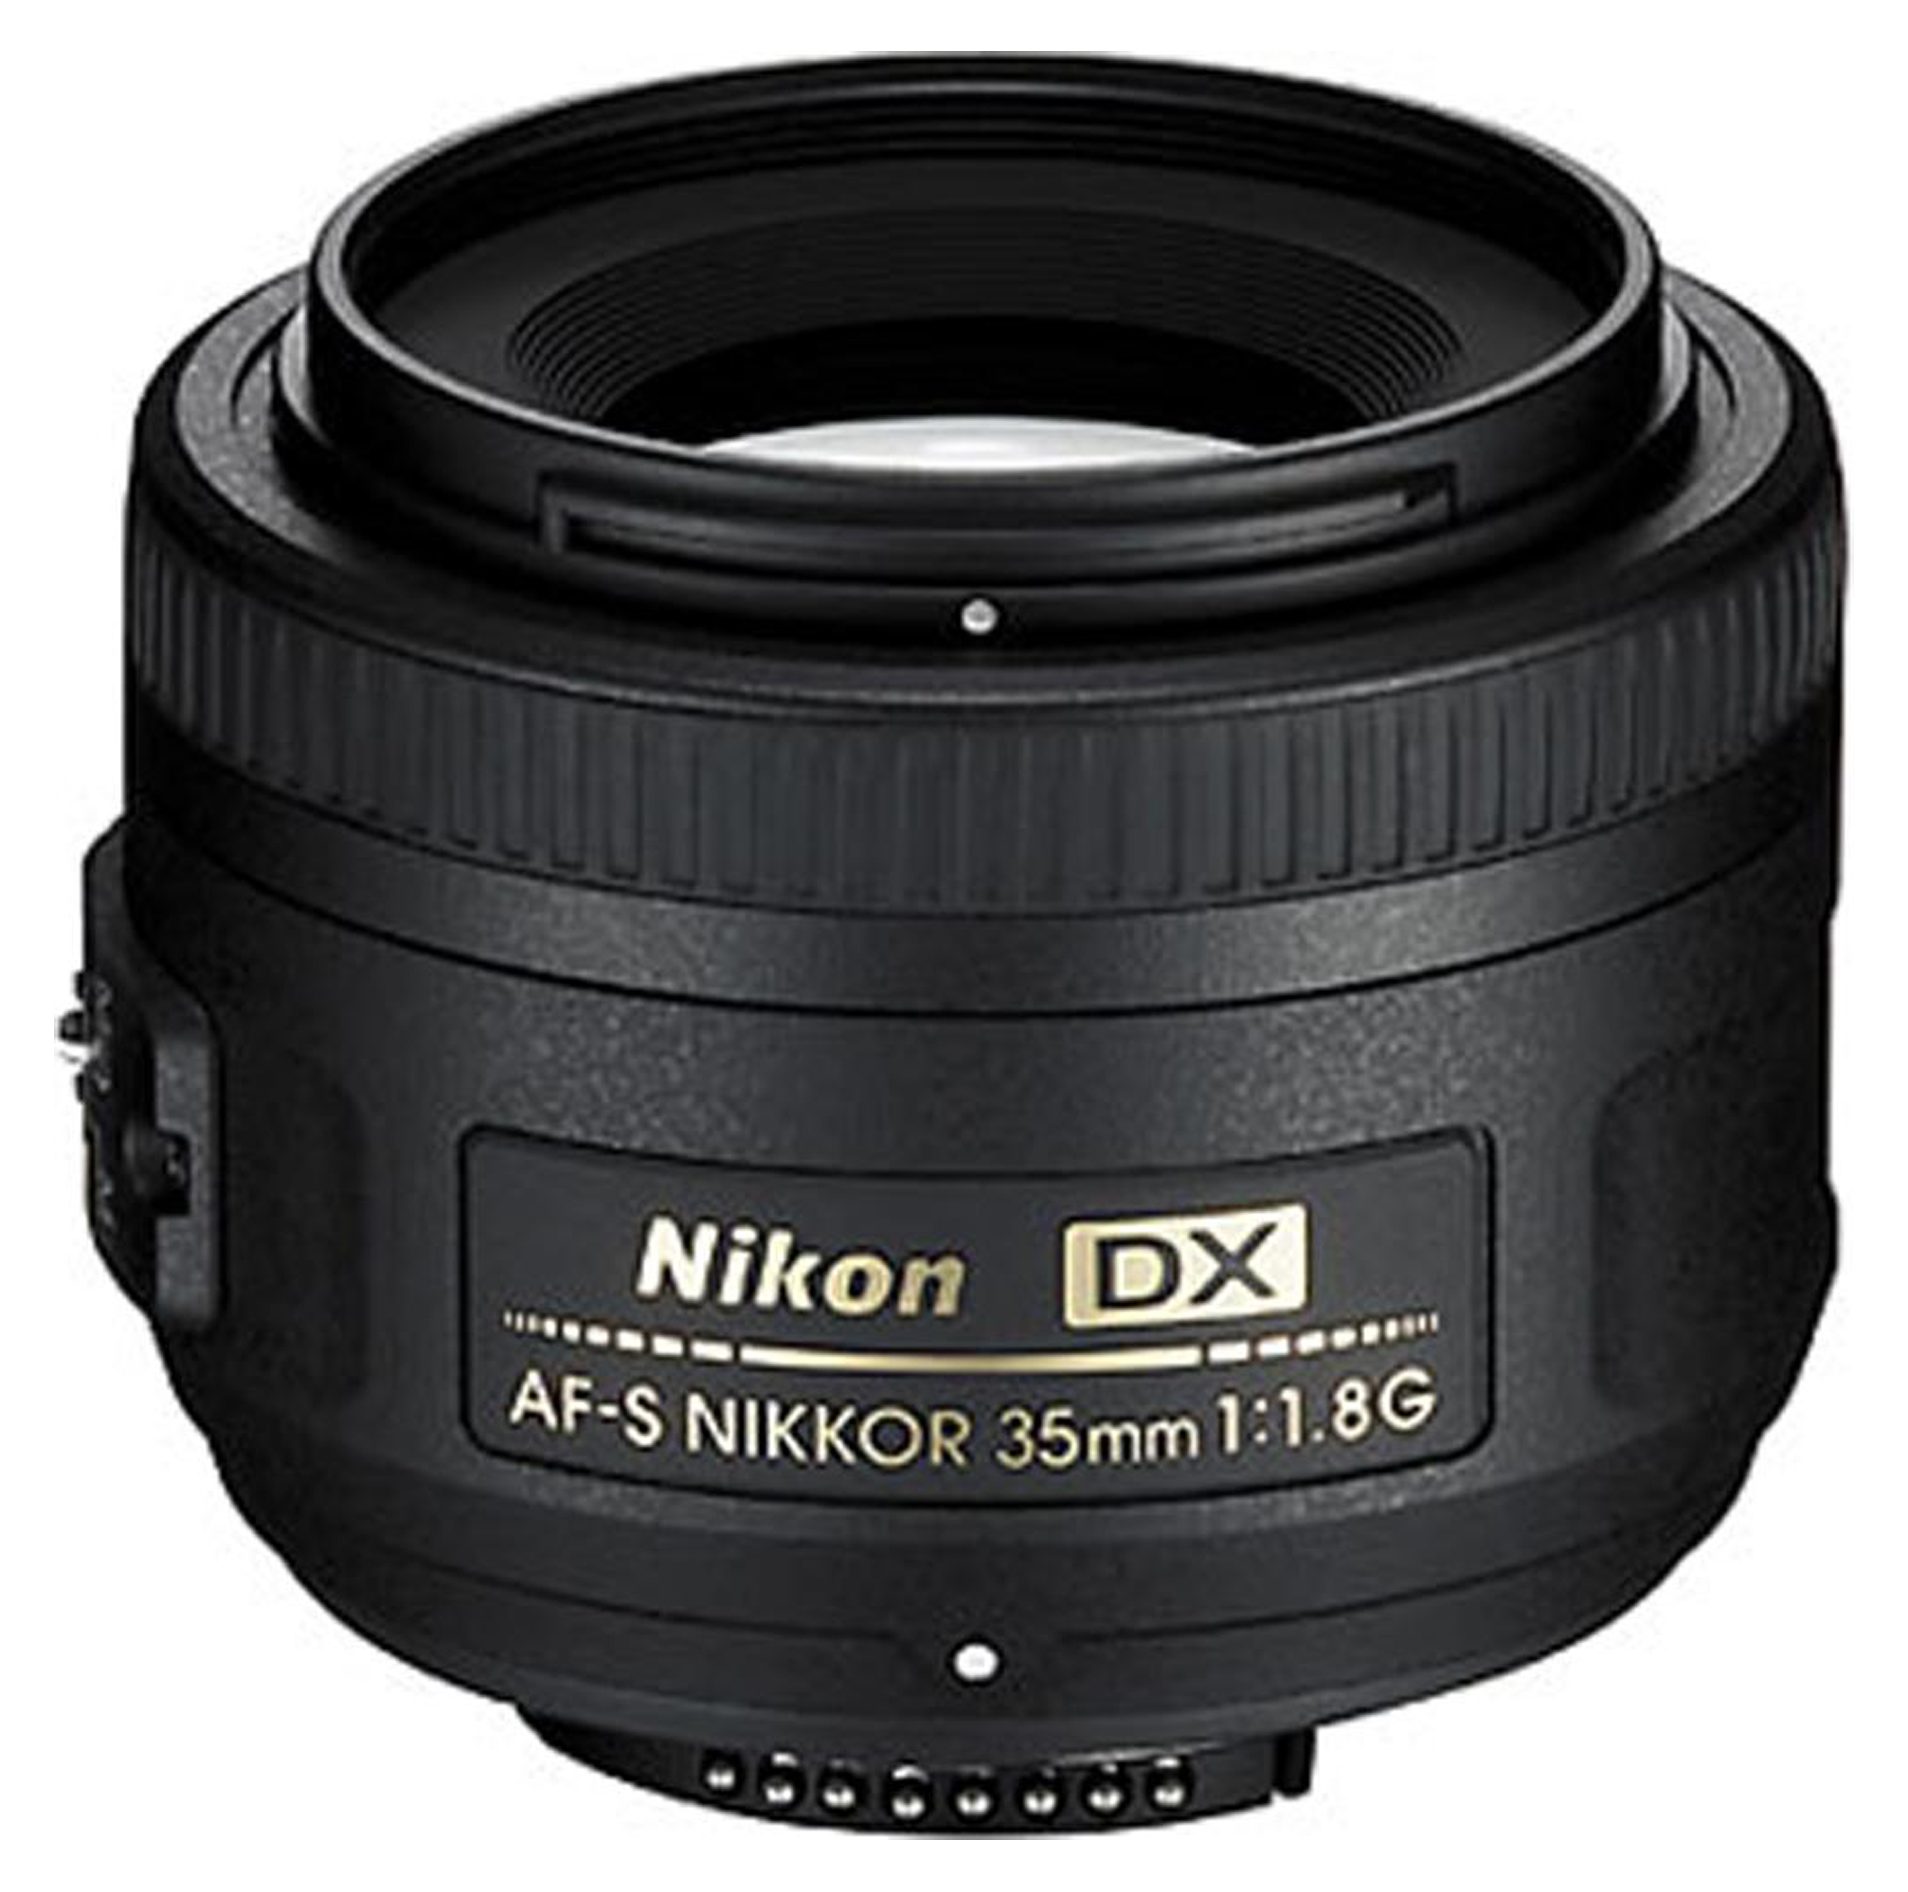 Объектив основные. Nikon 35mm f/1.8g af-s DX Nikkor. Nikon DX af-s Nikkor 35mm 1 1.8g. Nikon 35mm f/1.8g af-s Nikkor. Af-s DX Nikkor 35mm f/1.8g.